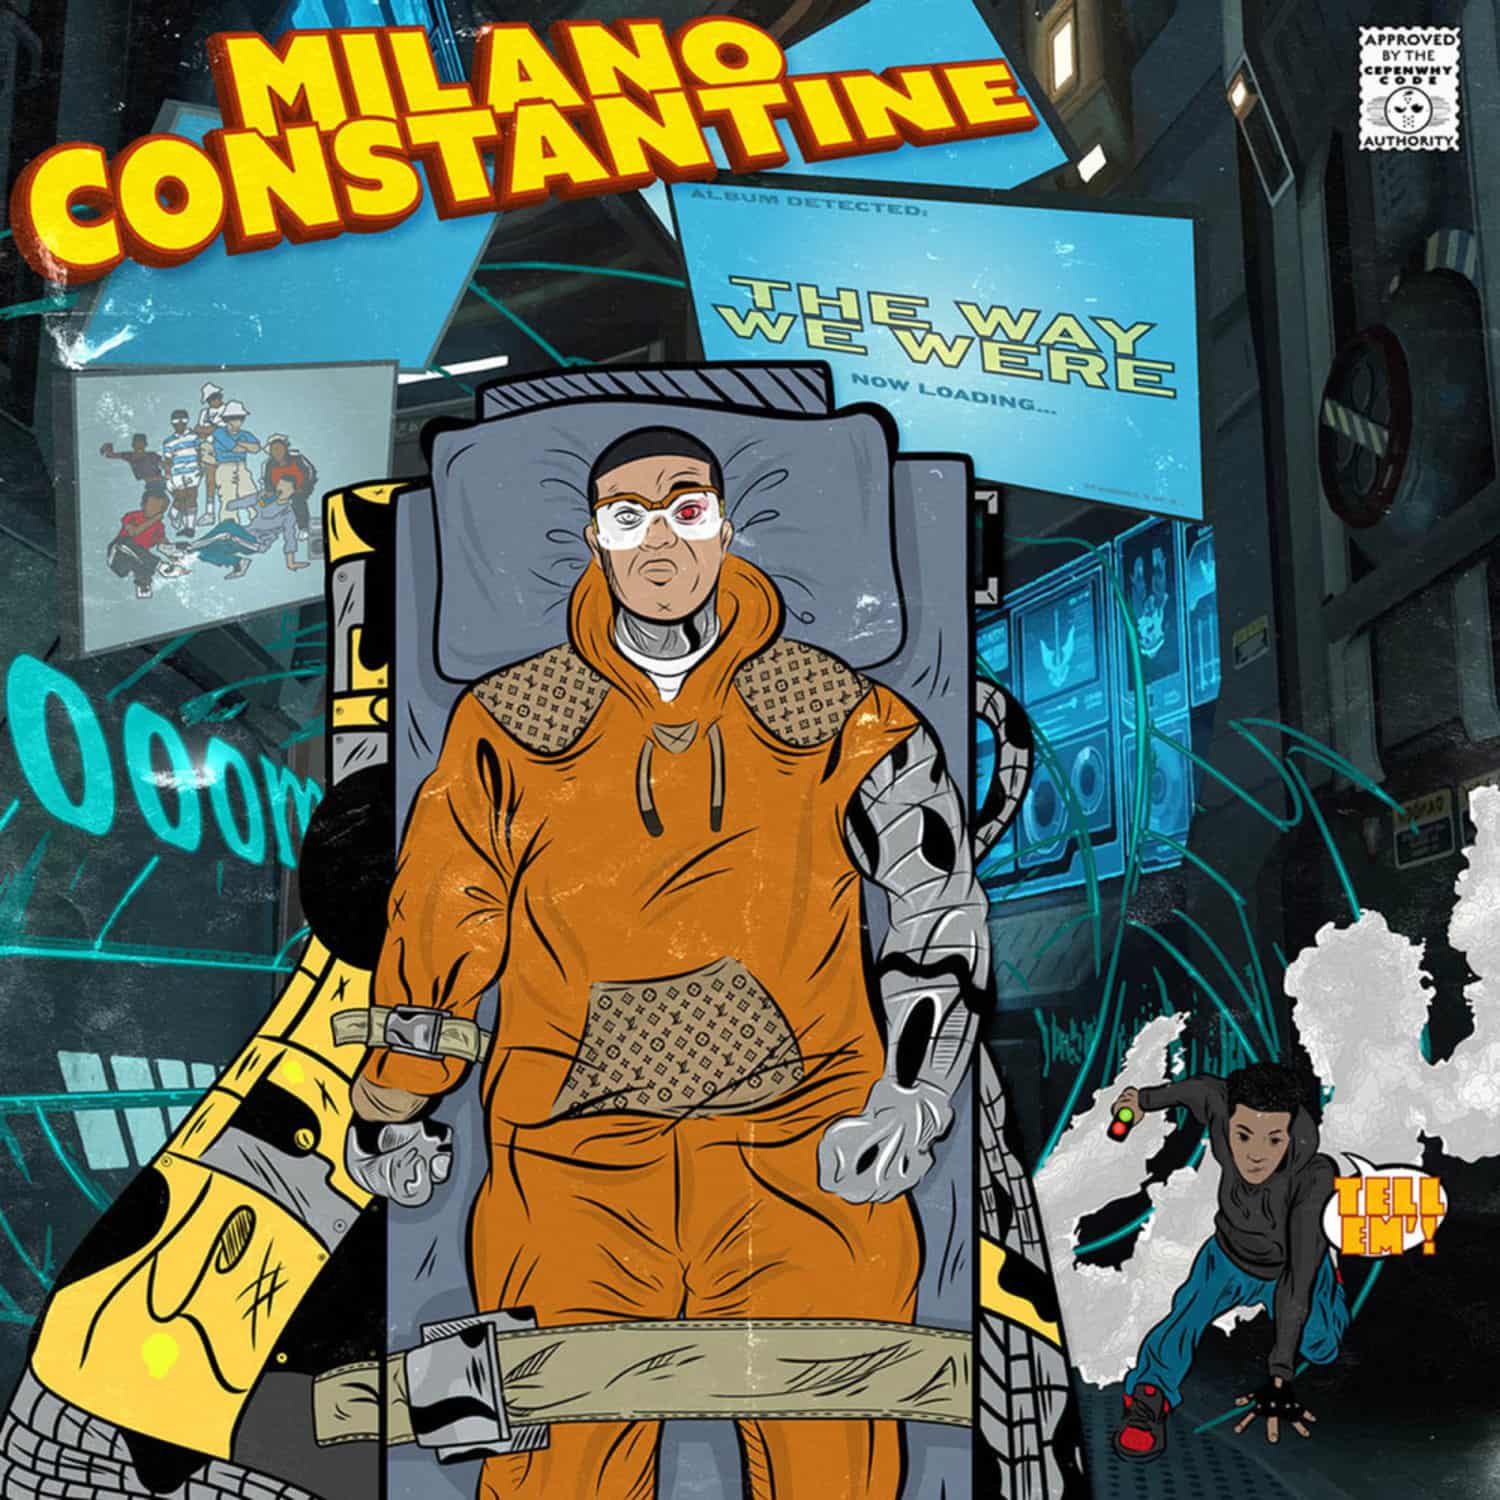 Milano Constante - THE WAY WE WERE